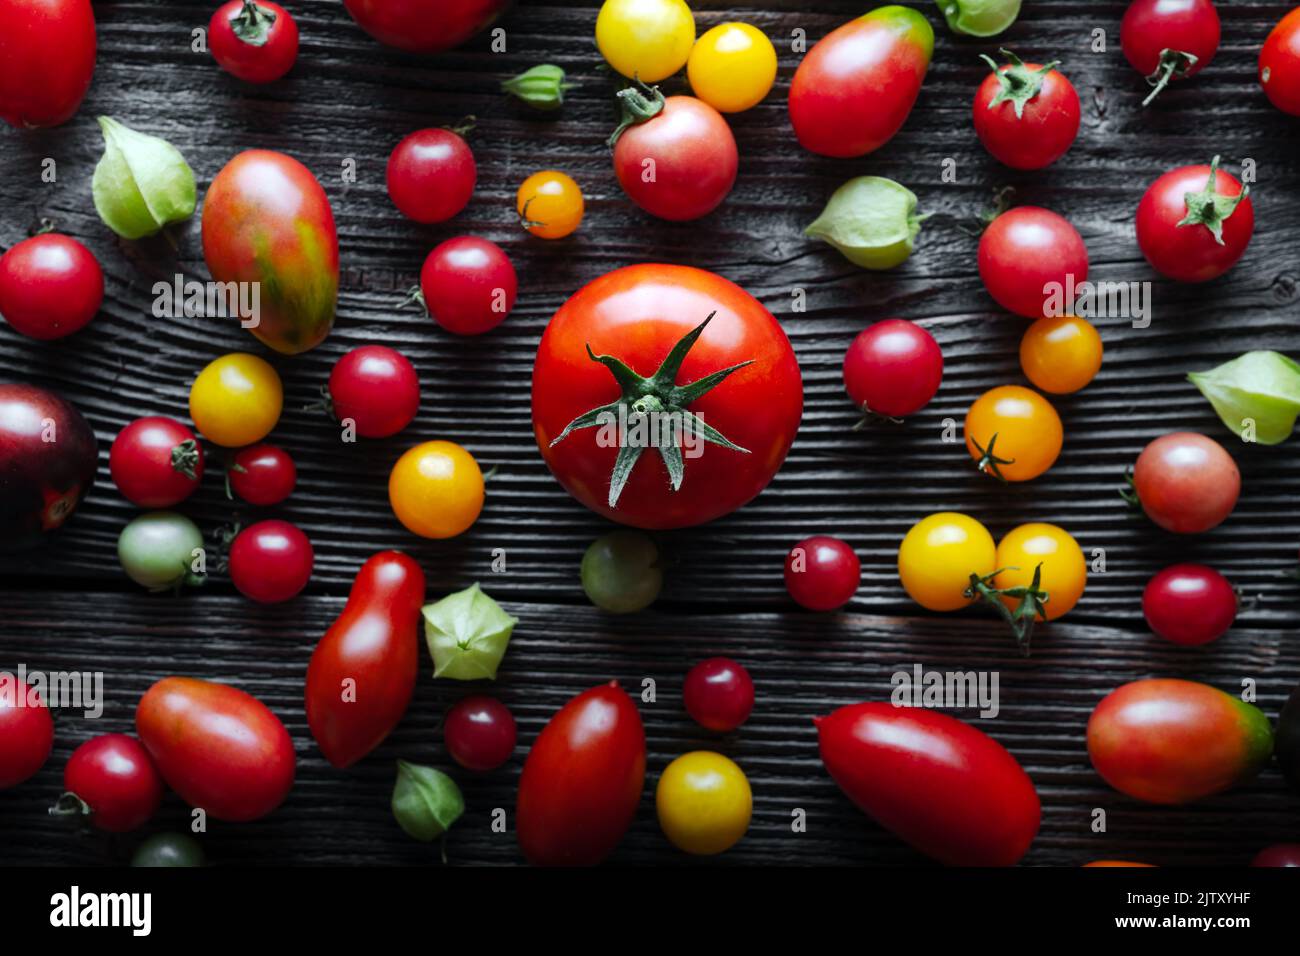 Se mezclan diferentes variedades de tomate rojo, amarillo, verde y negro sobre una mesa de madera. Frescos variados y coloridos tomates de verano de fondo, primeros planos. Fotografía de alimentos Foto de stock